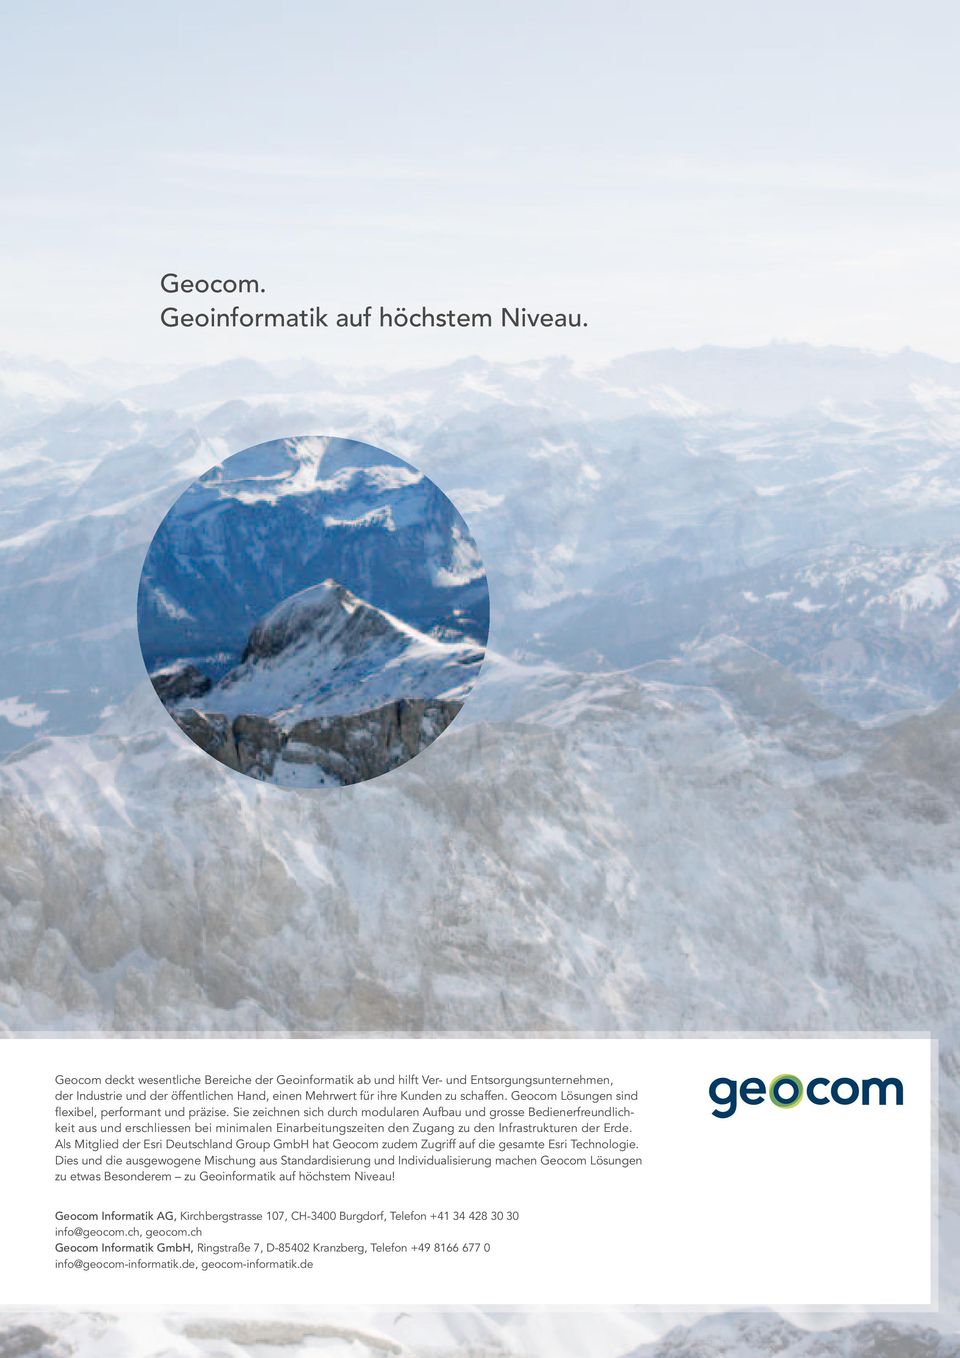 Geocom Lösungen sind flexibel, performant und präzise.